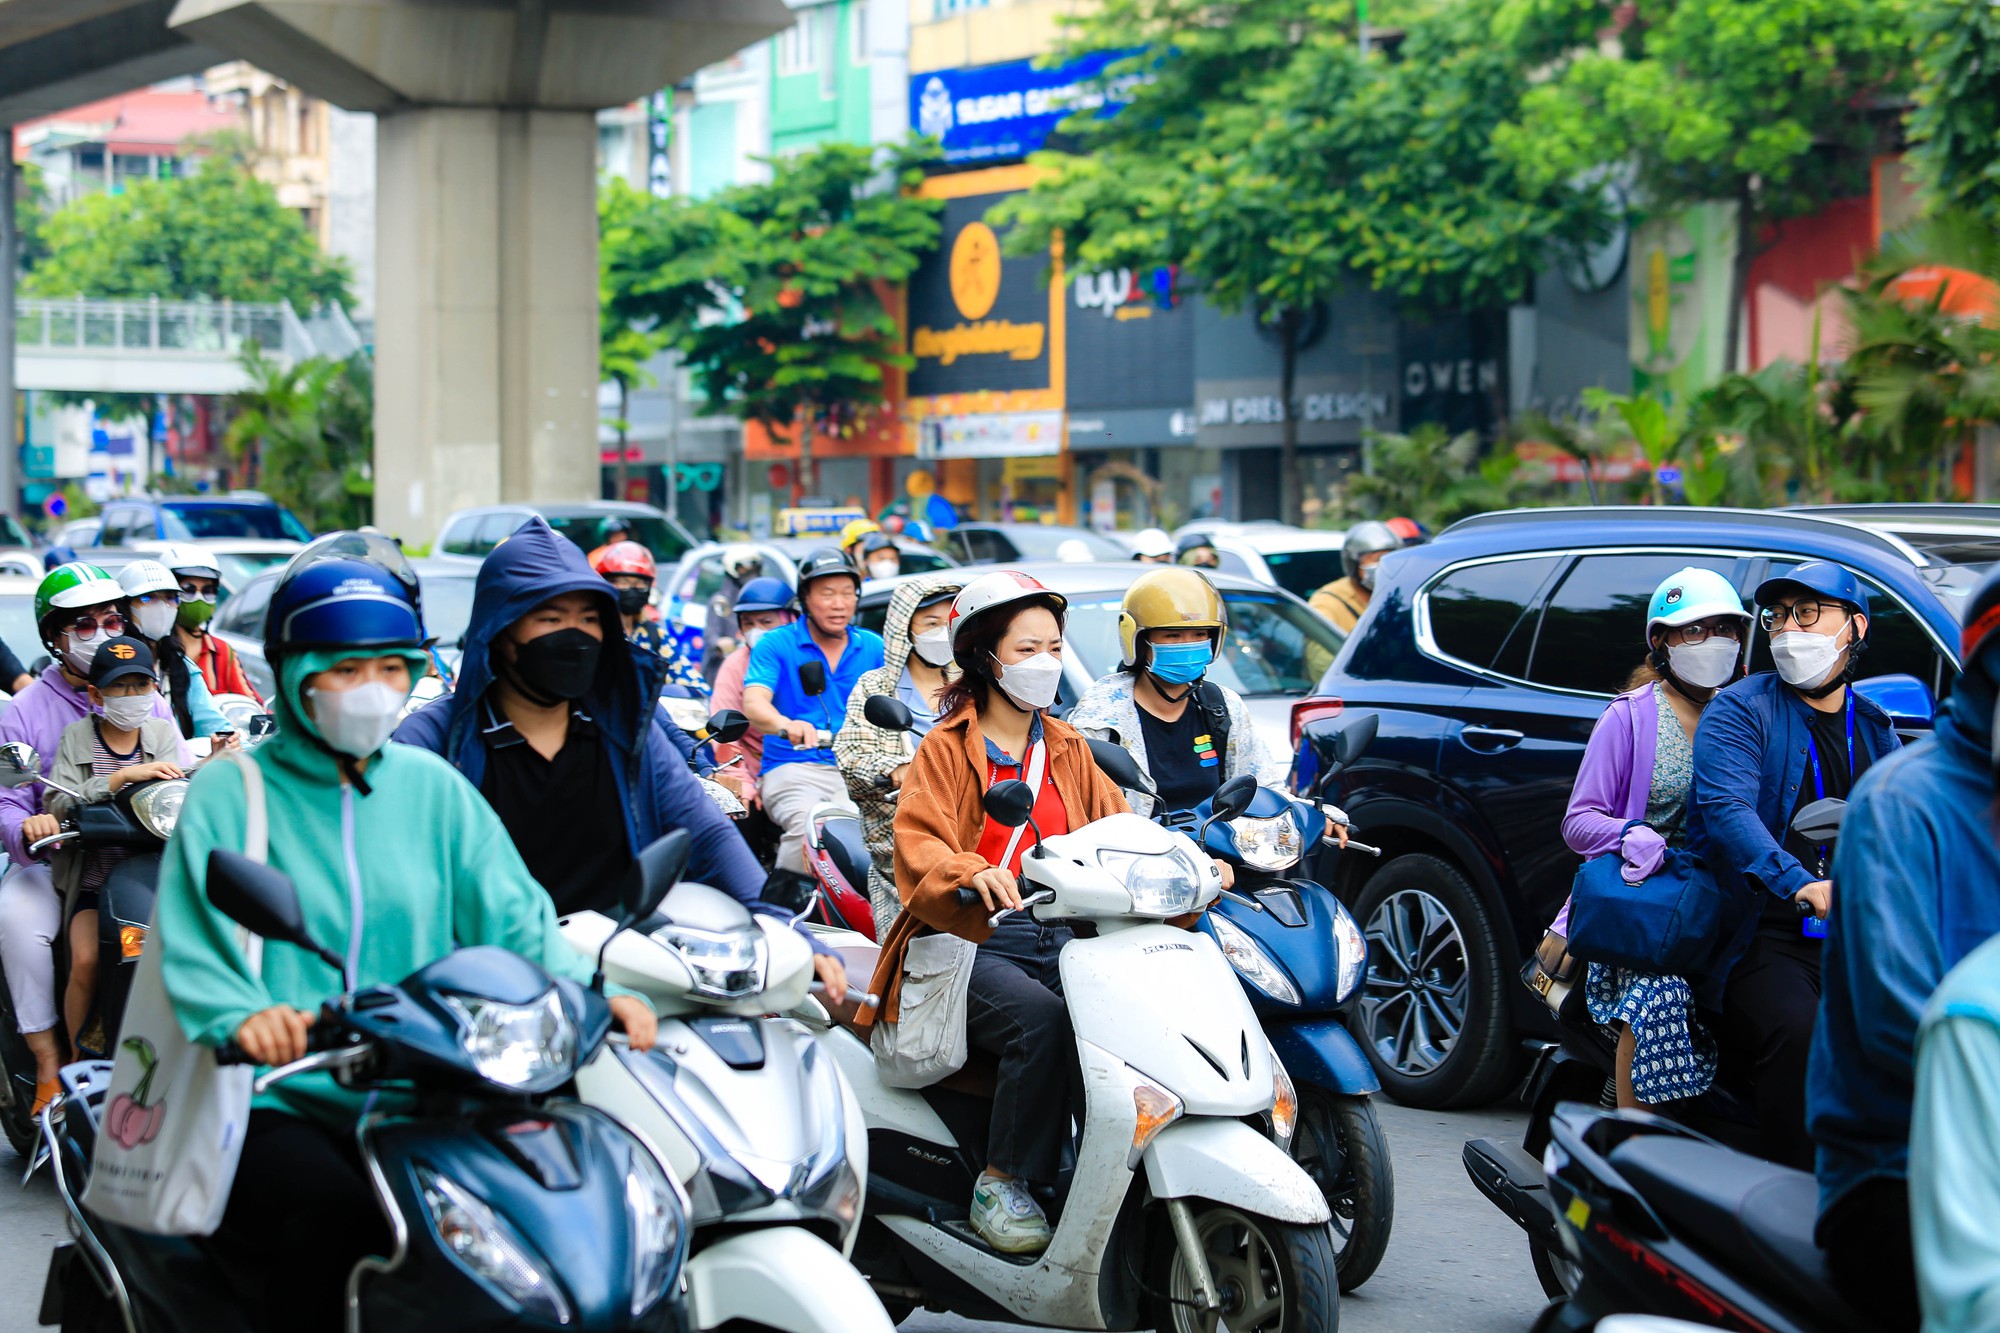 CLIP: Cận cảnh lô cốt khiến giao thông đường Nguyễn Trãi ùn ứ kéo dài giờ cao điểm - Ảnh 6.